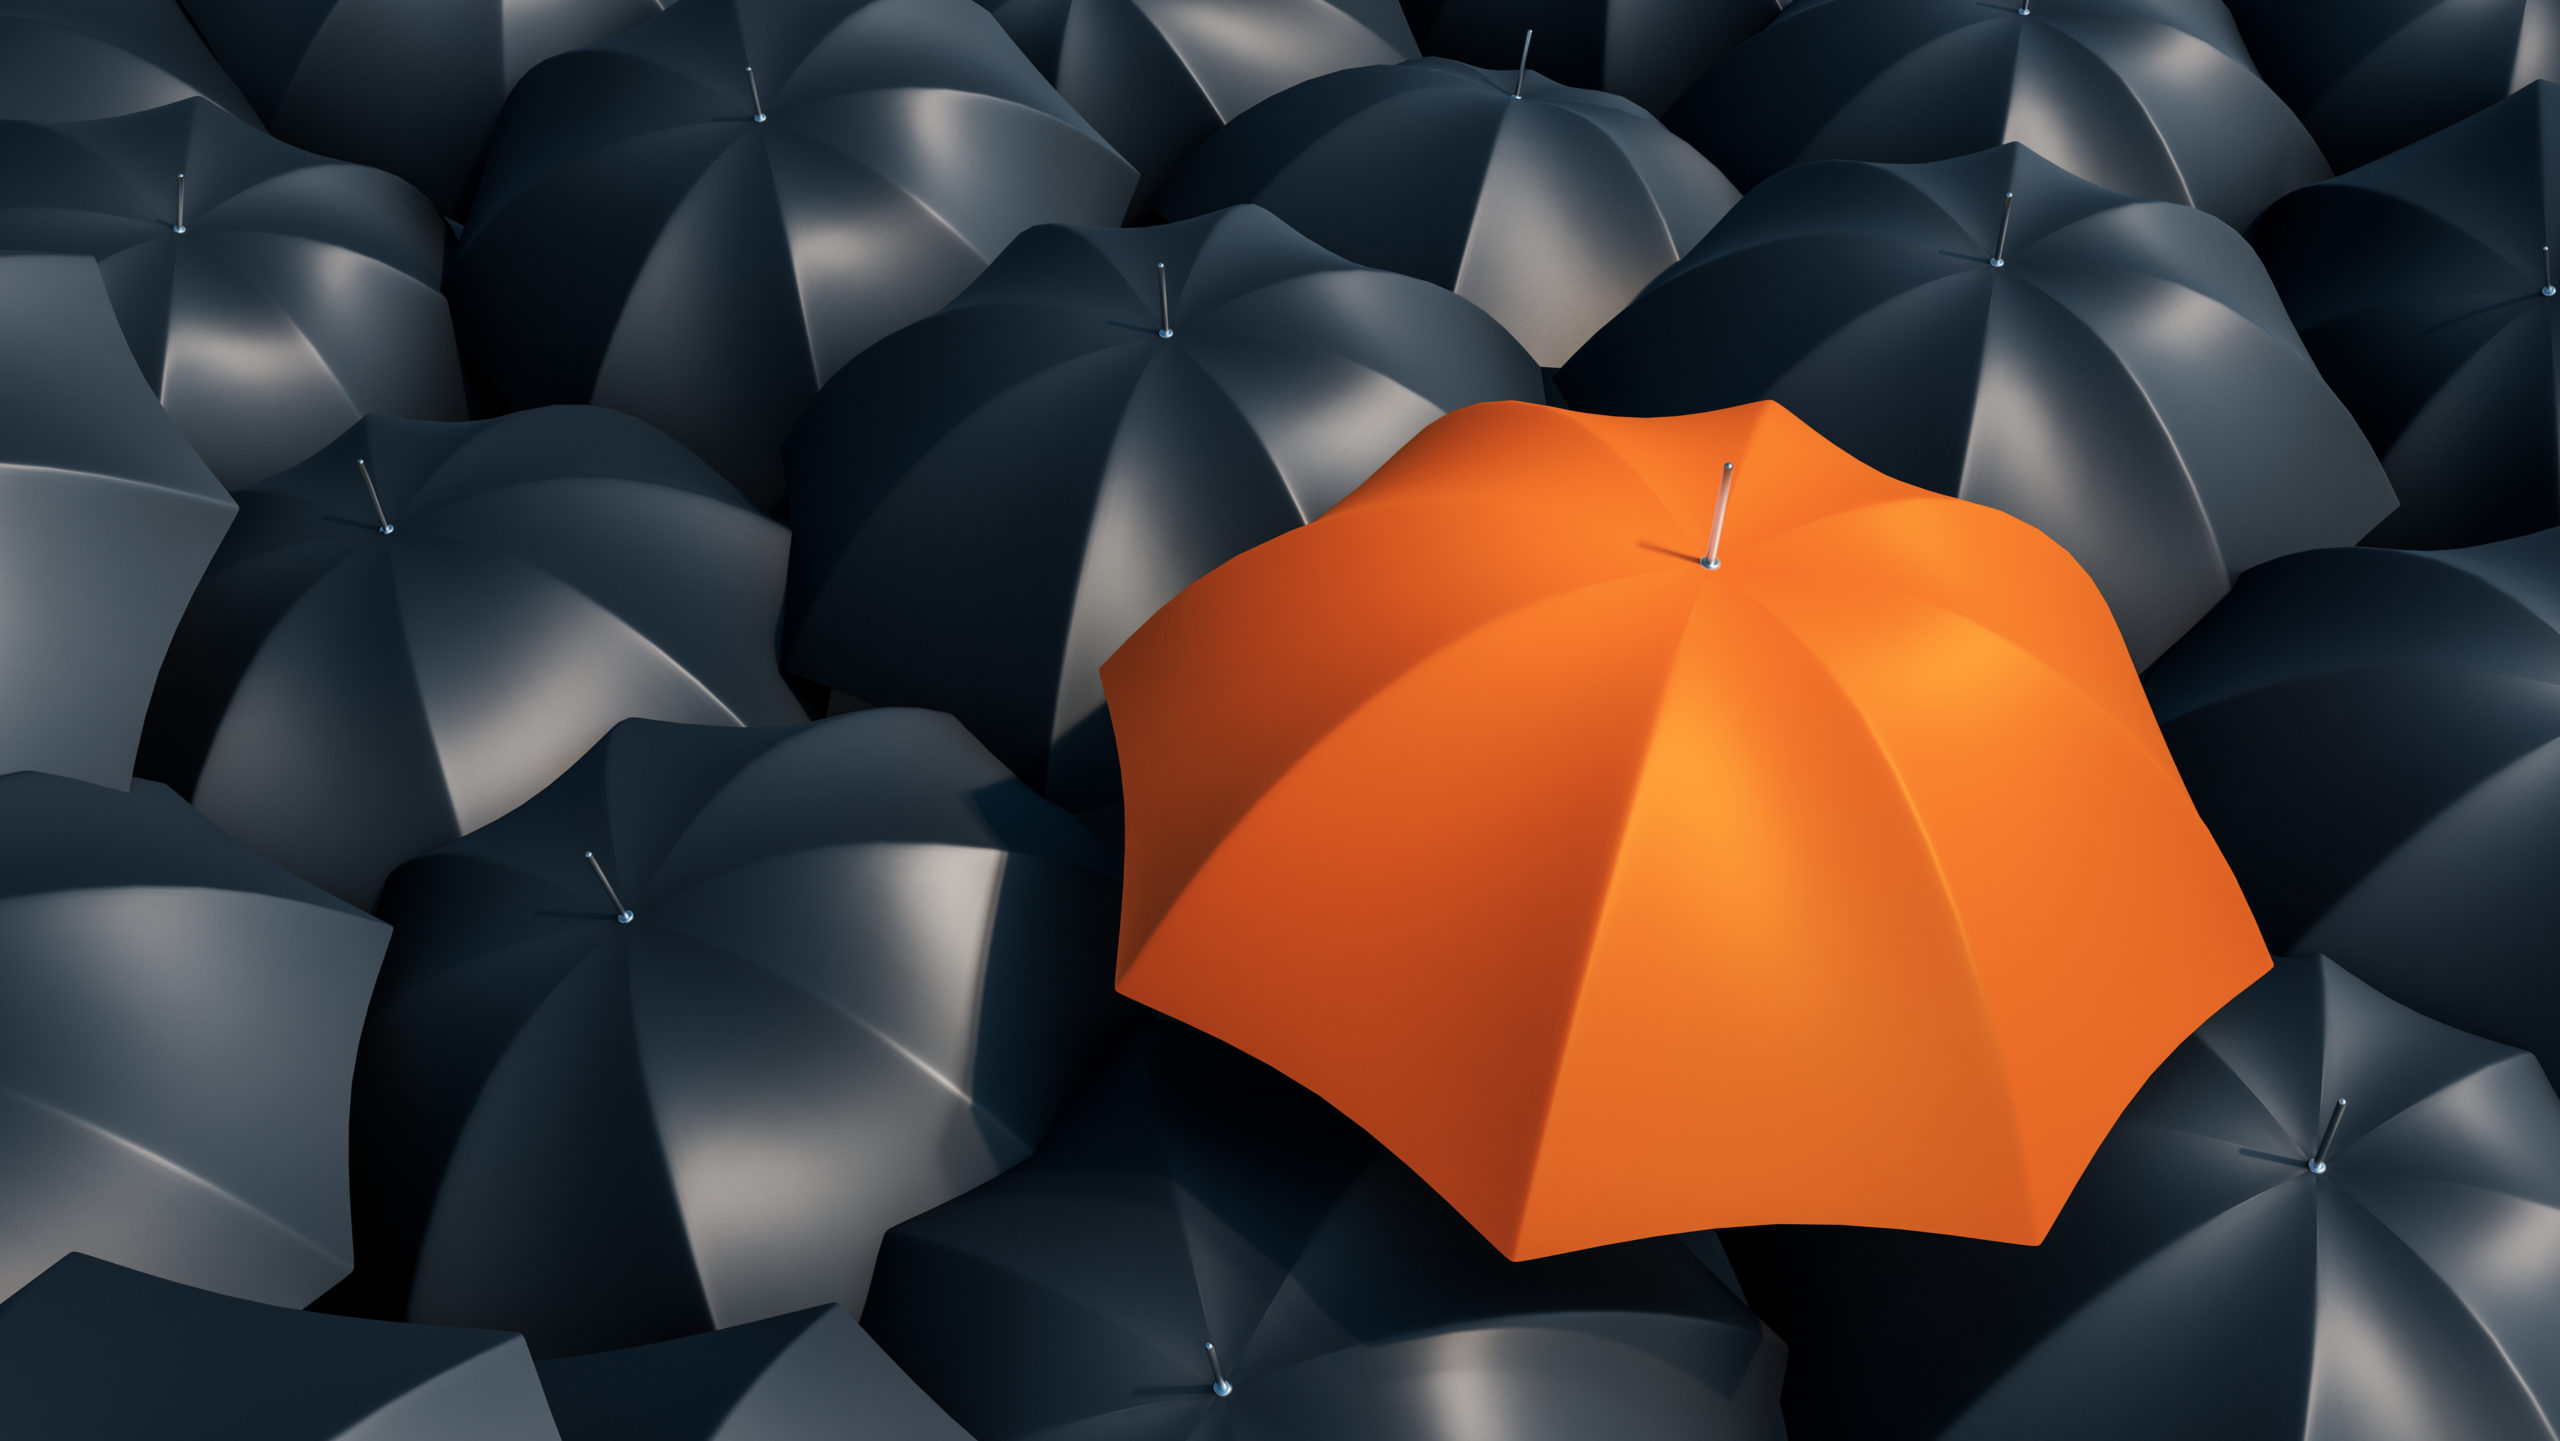 orange unbrella with black umbrellas